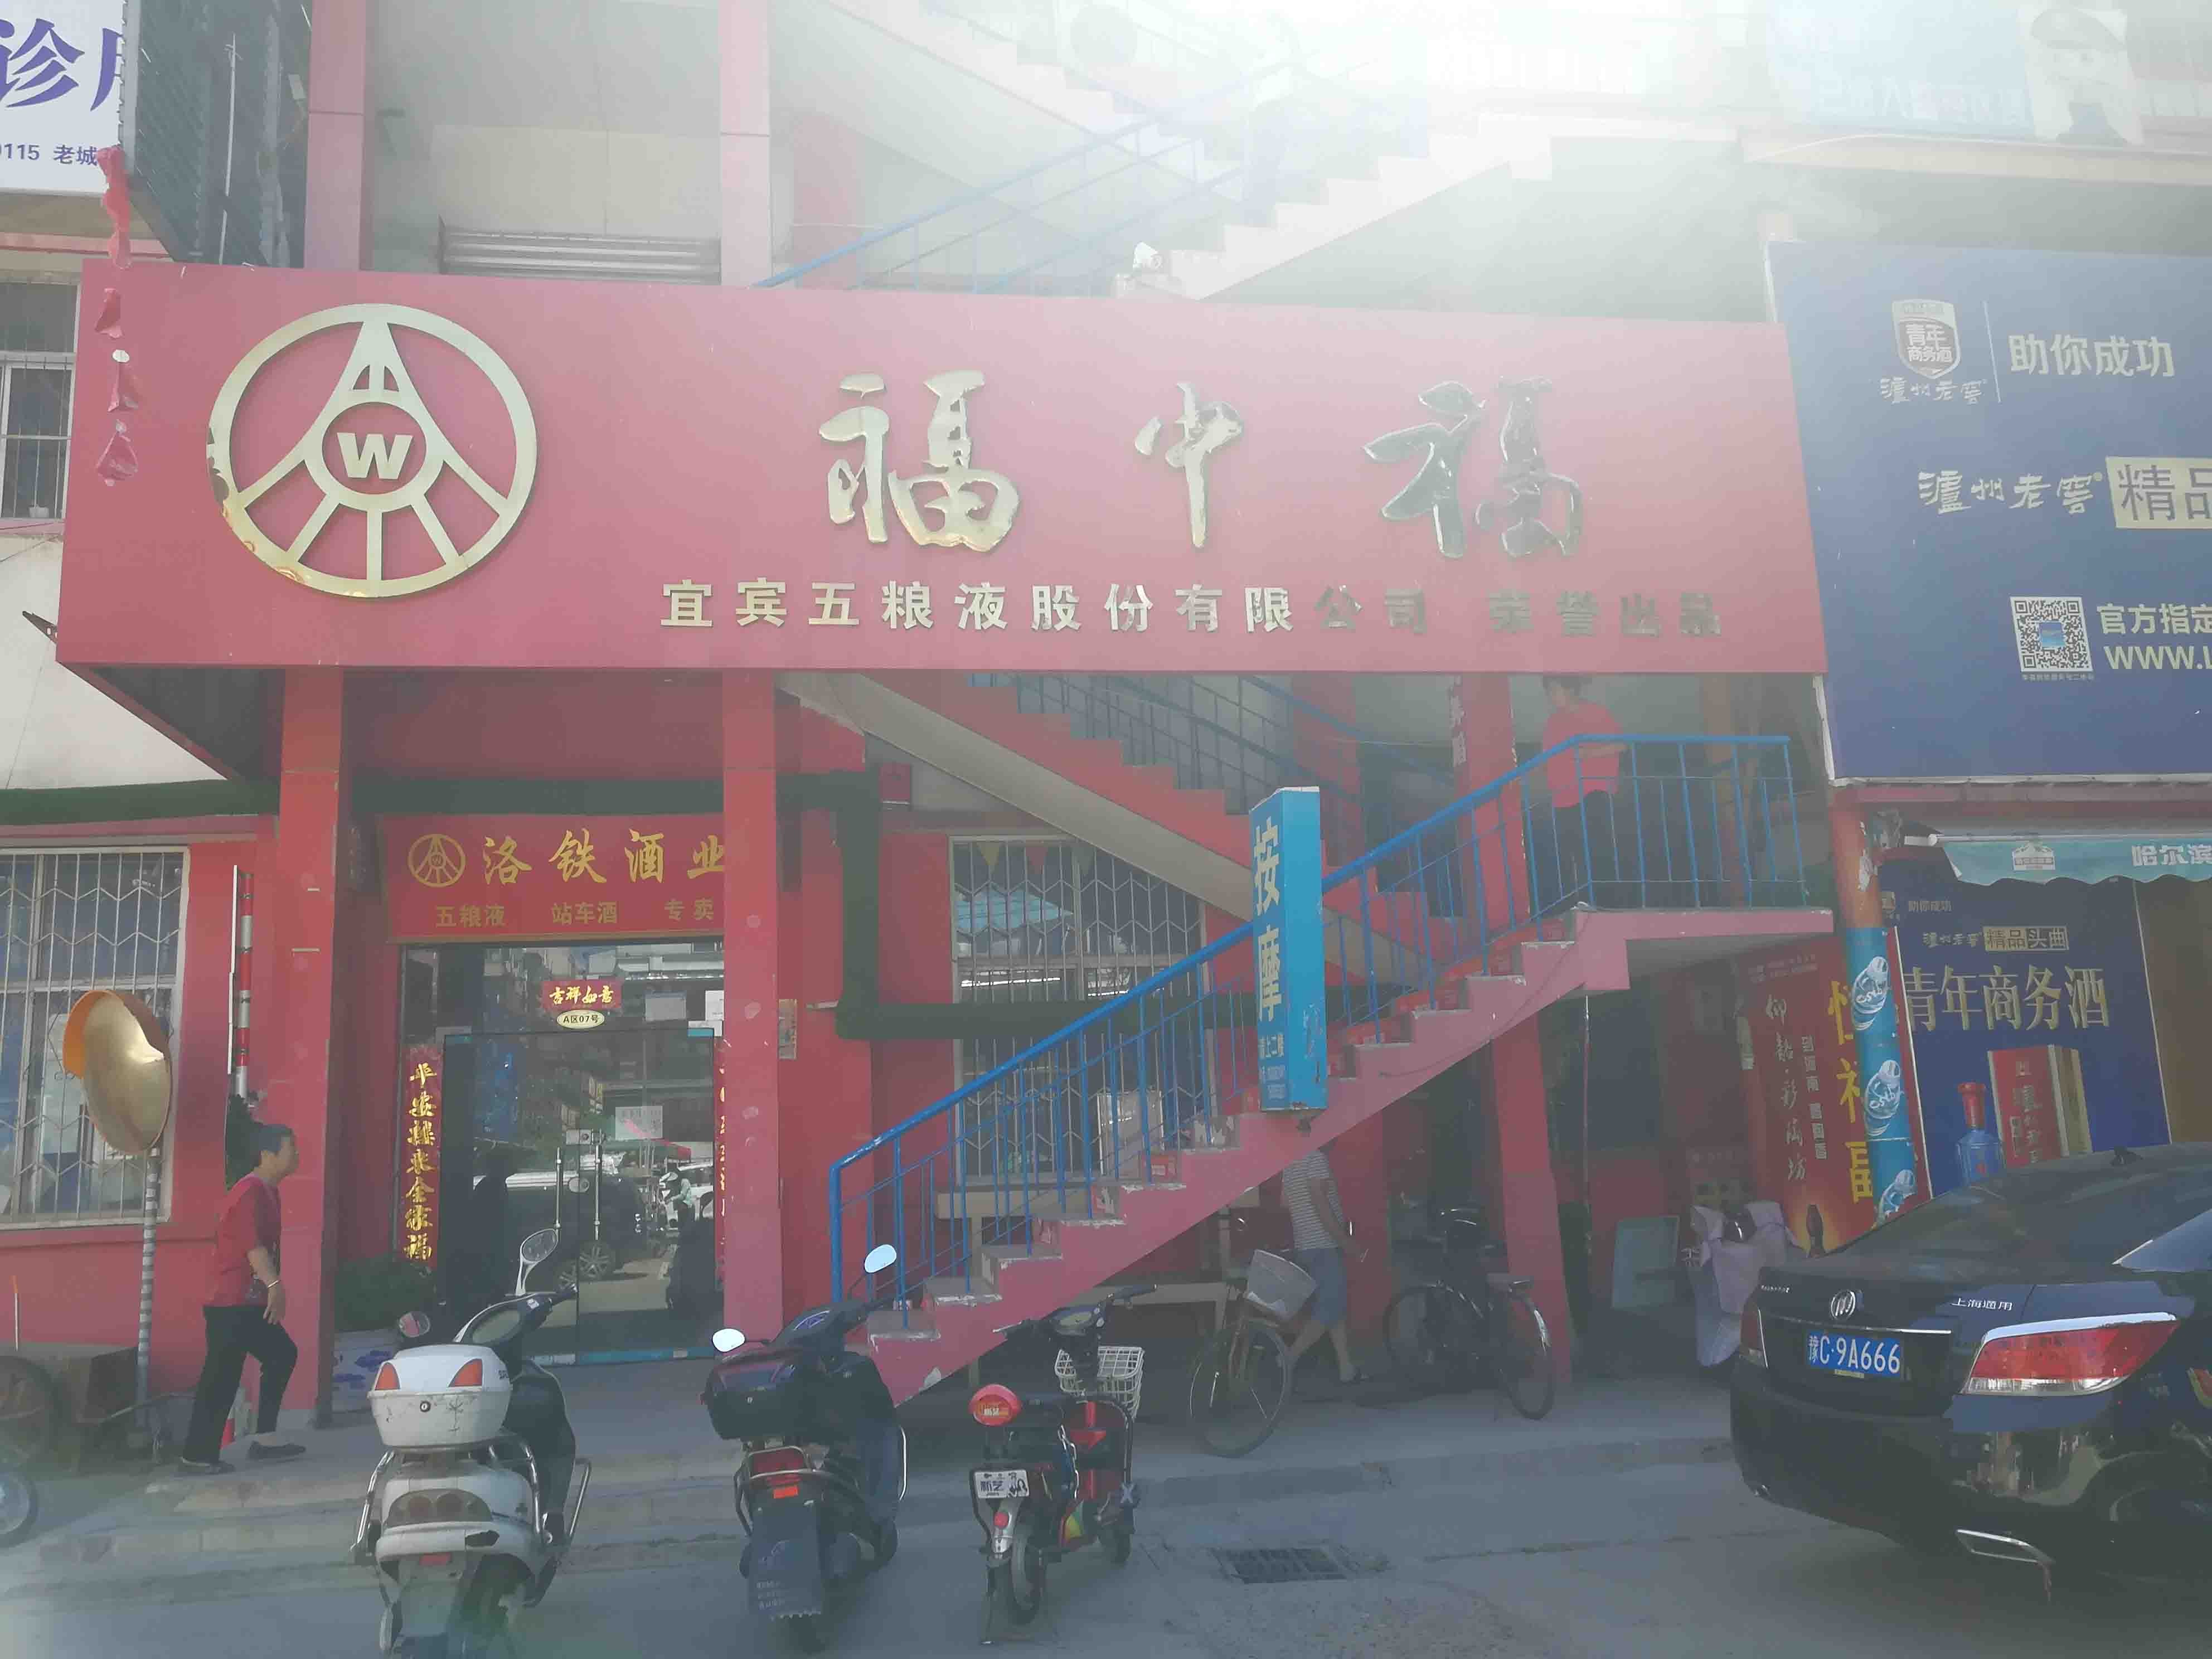 广州街洛阳商业地产出租服务，提供舞蹈的商铺和写字楼选项。无论您是企业还是成熟企业，我们的列表都能满足您的需求